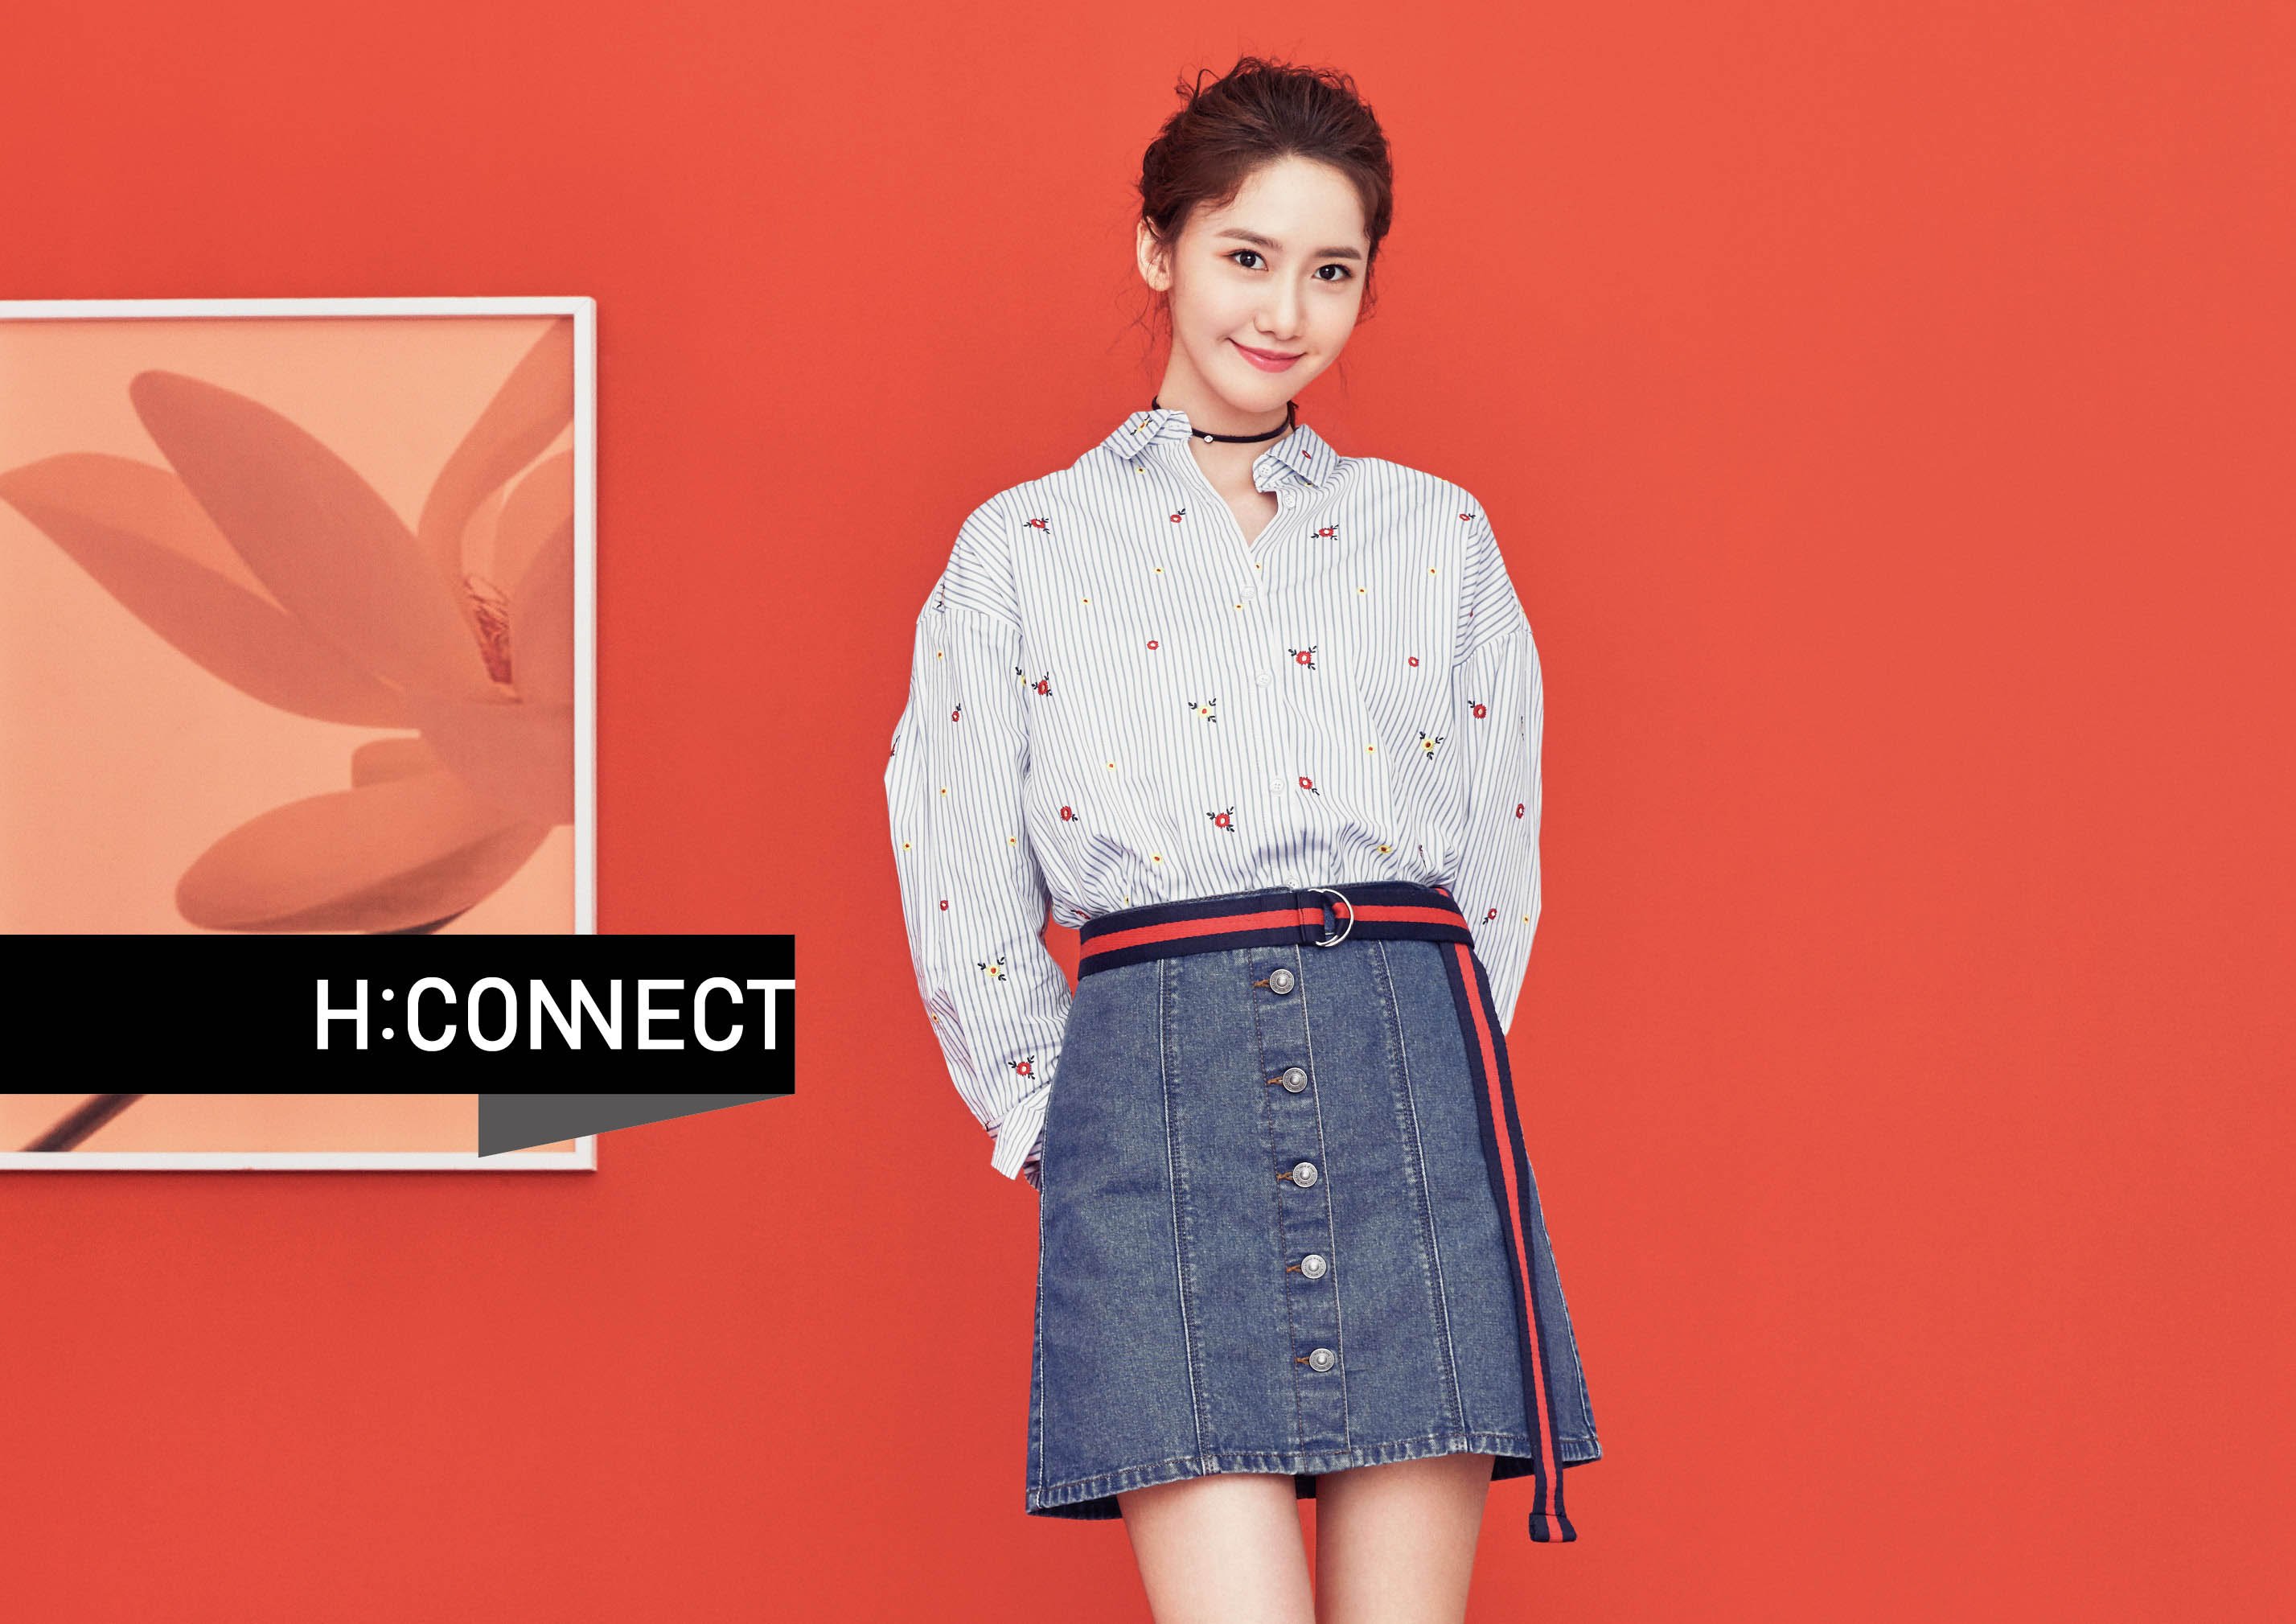 [OTHER][27-07-2015]YoonA trở thành người mẫu mới cho dòng thời trang "H:CONNECT" - Page 7 2WMTk6UbWf-3000x3000